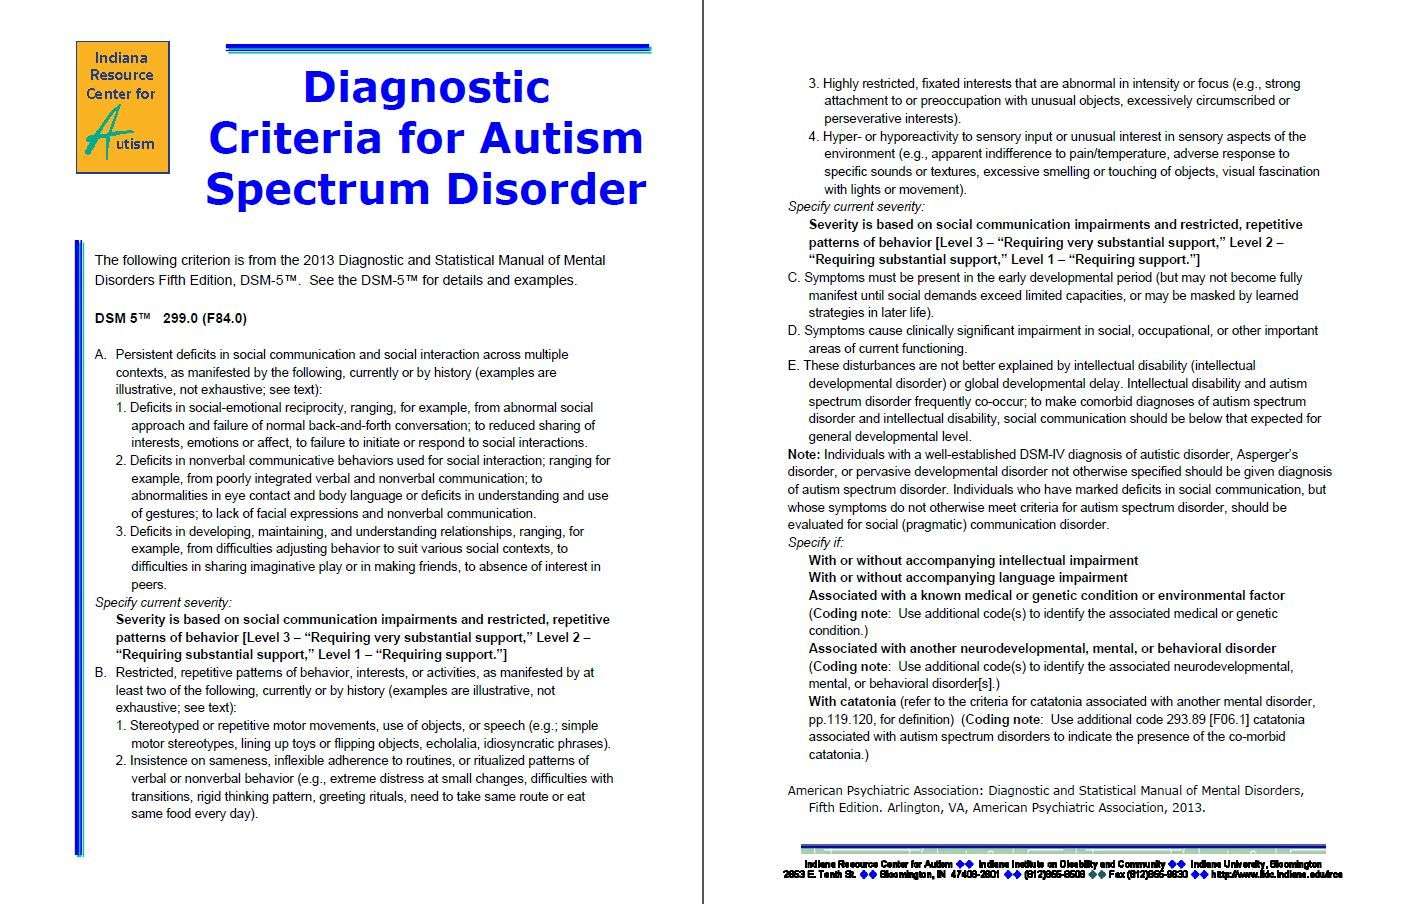 DSM 5 Criteria for ASD